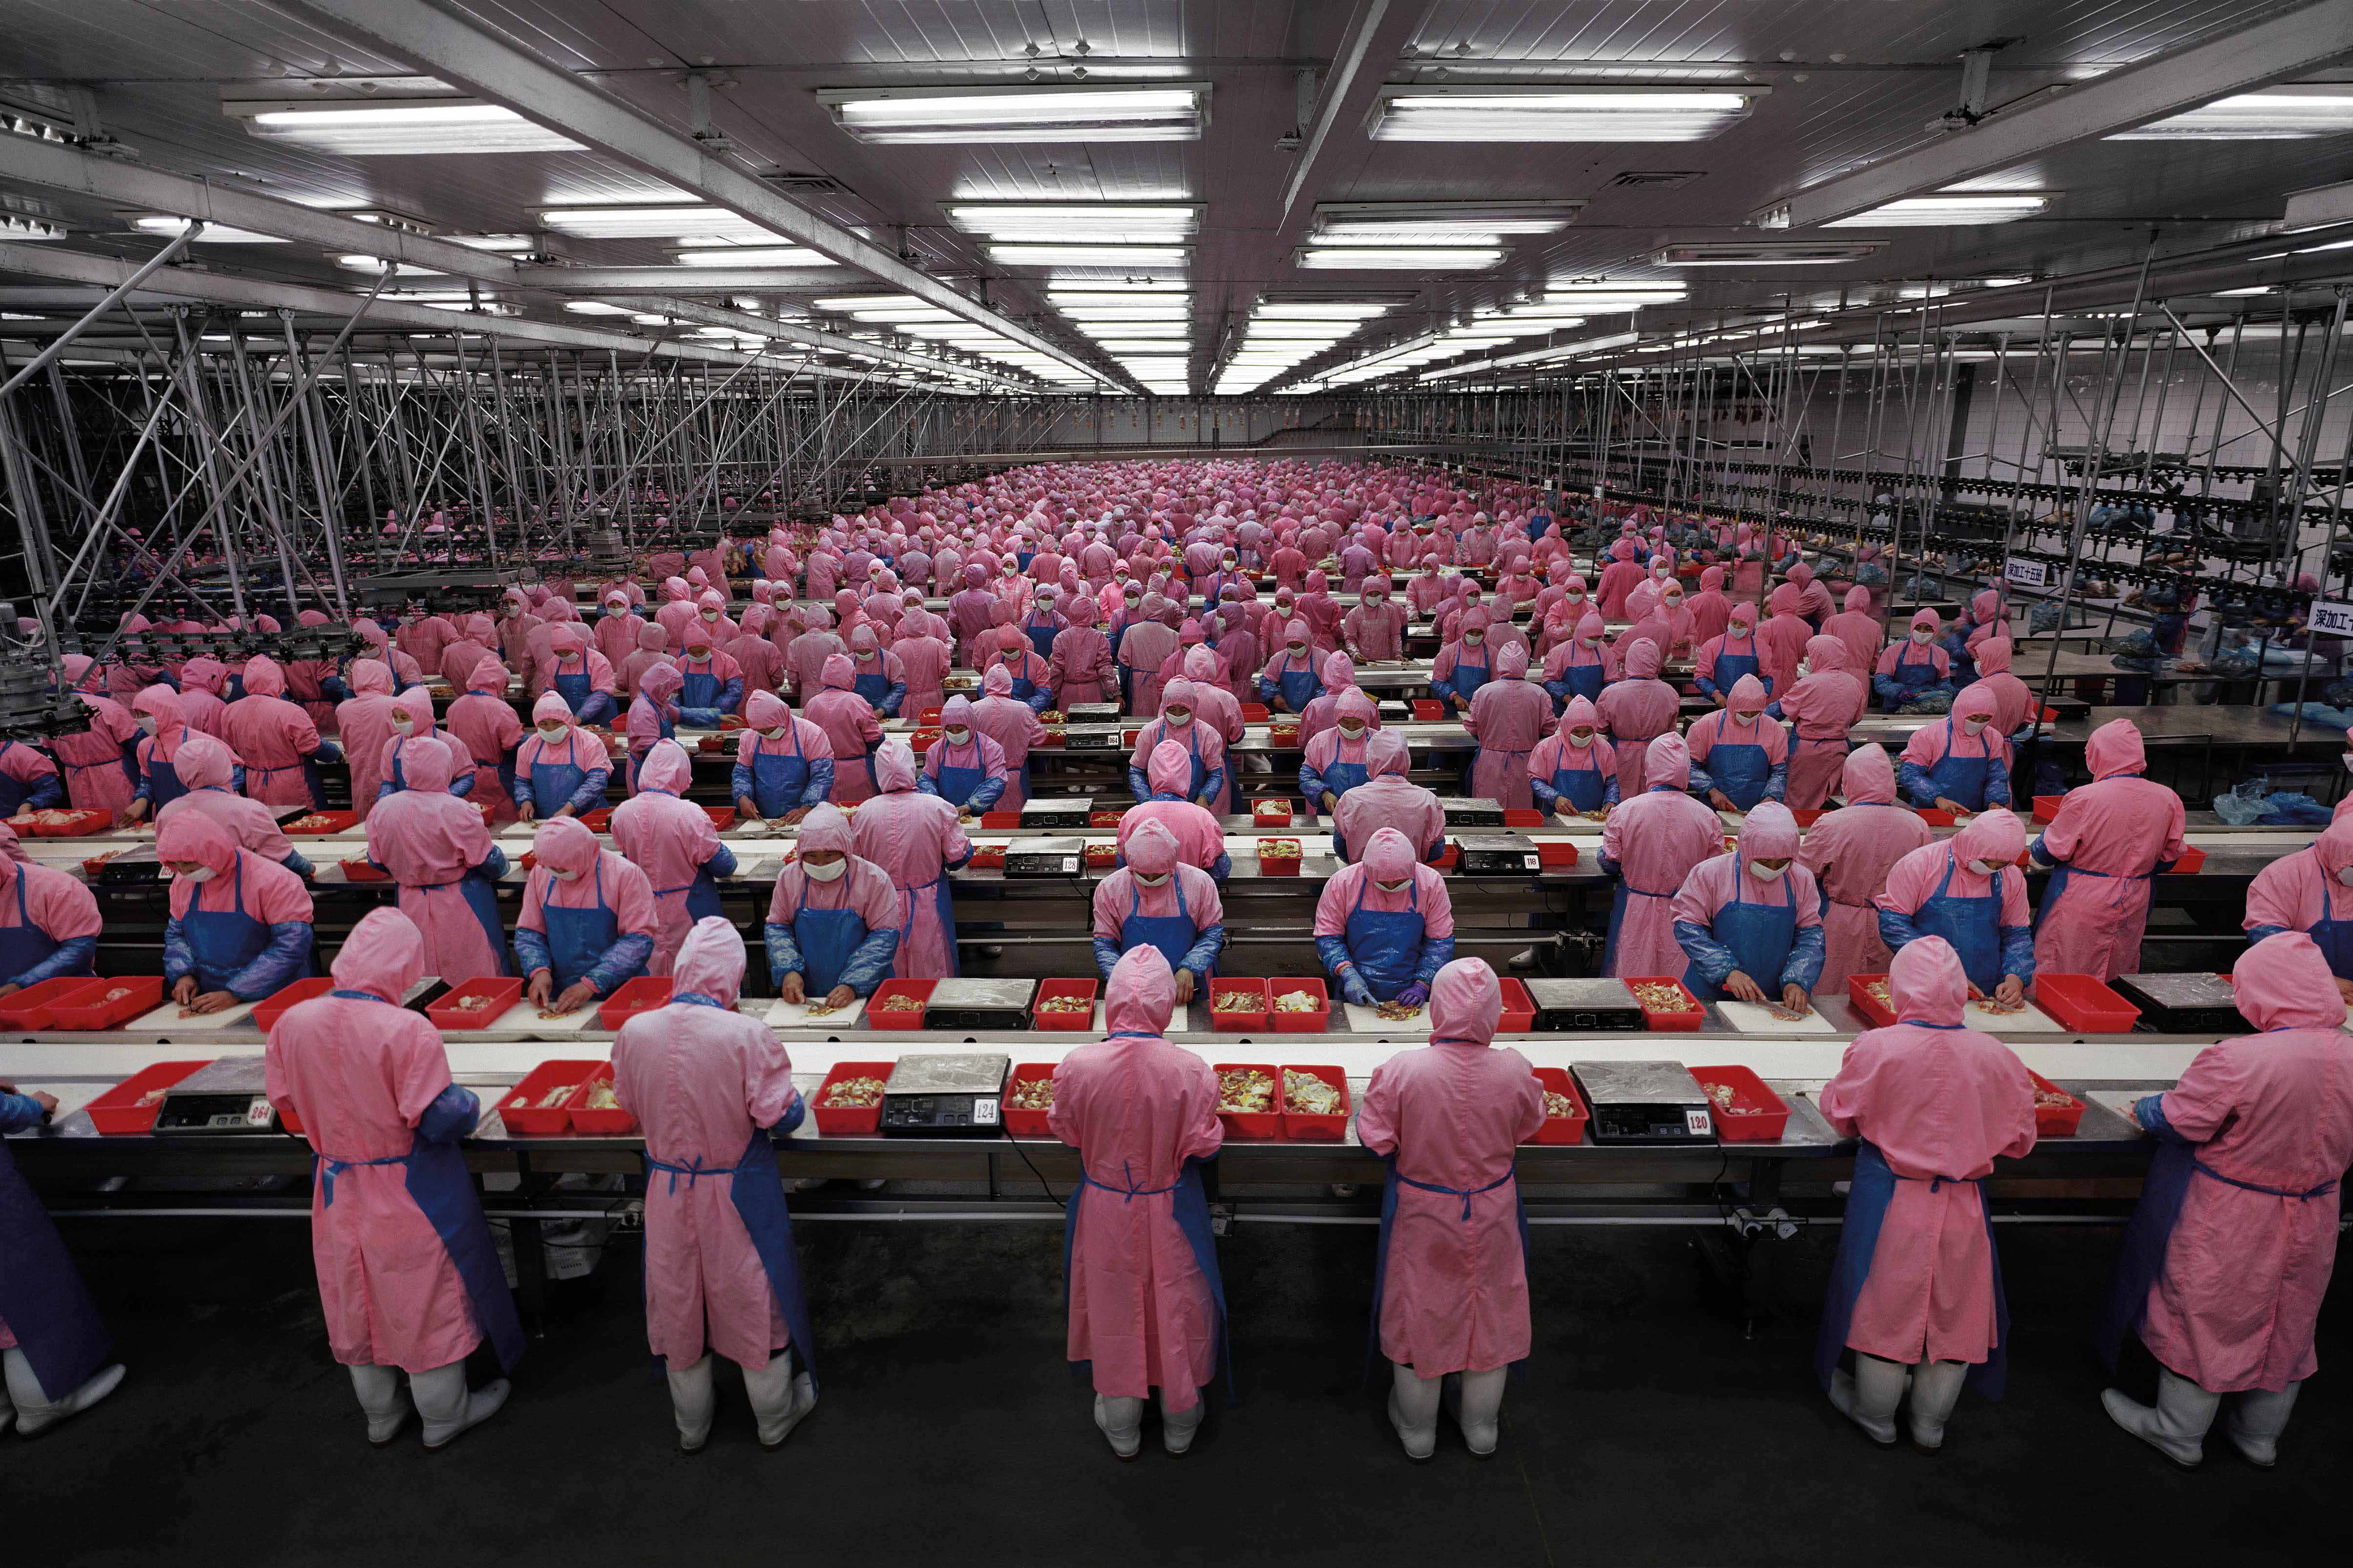 Массовое производство продуктов. Завод Фоксконн в Китае. Фабрика Foxconn в Китае. Китайцы на конвейере. Китайцы на заводе.